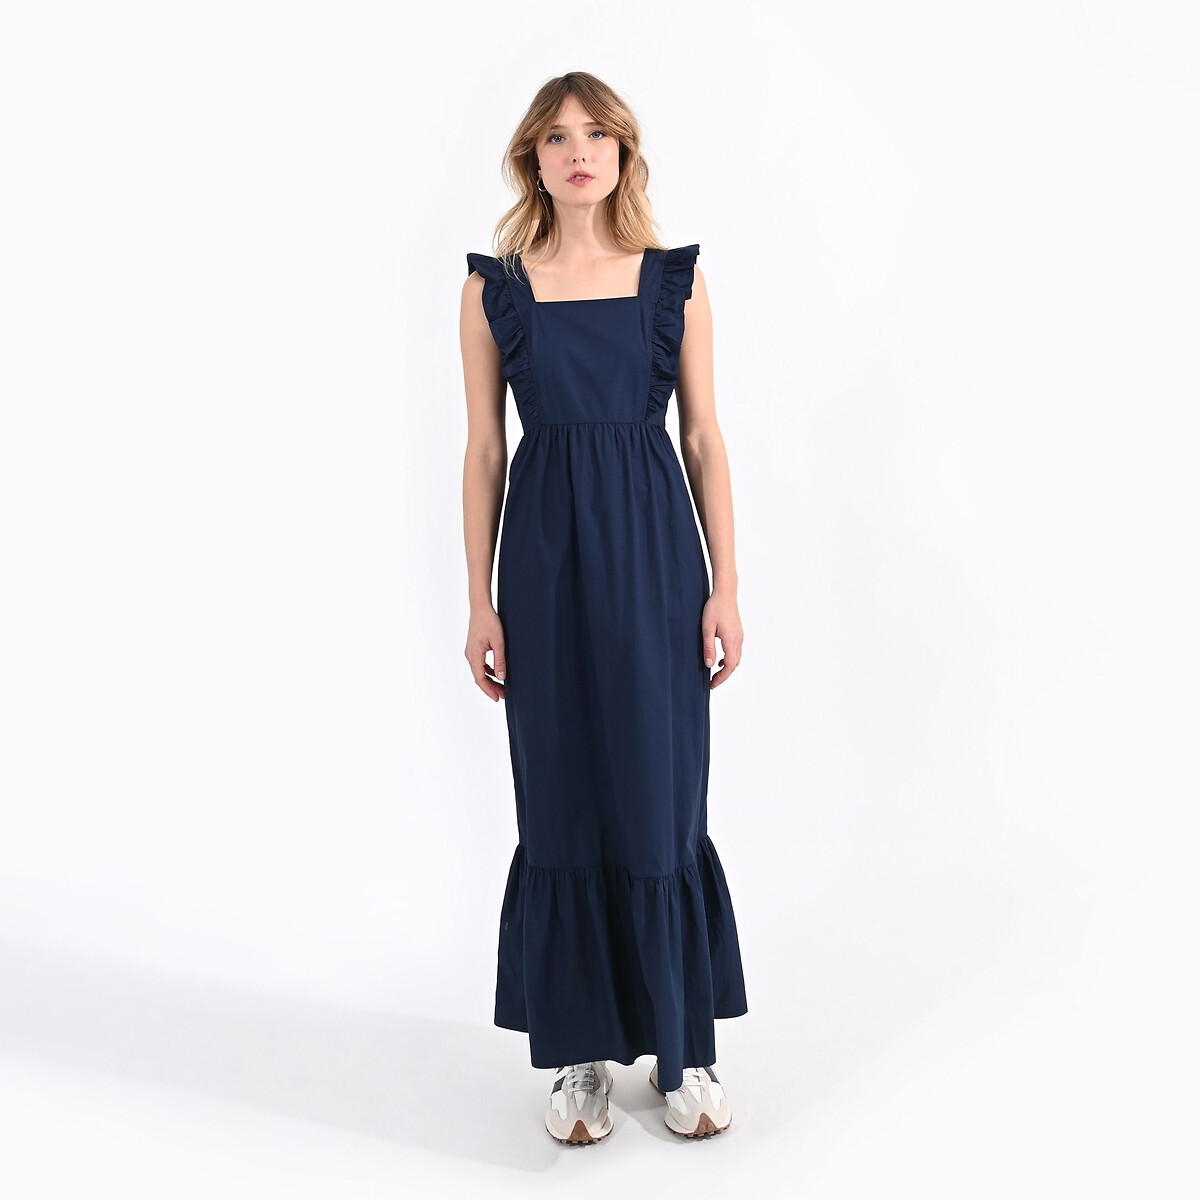 Платье длинное с воланами XL синий платье длинное на пуговицах с воланами с поясом 44 синий